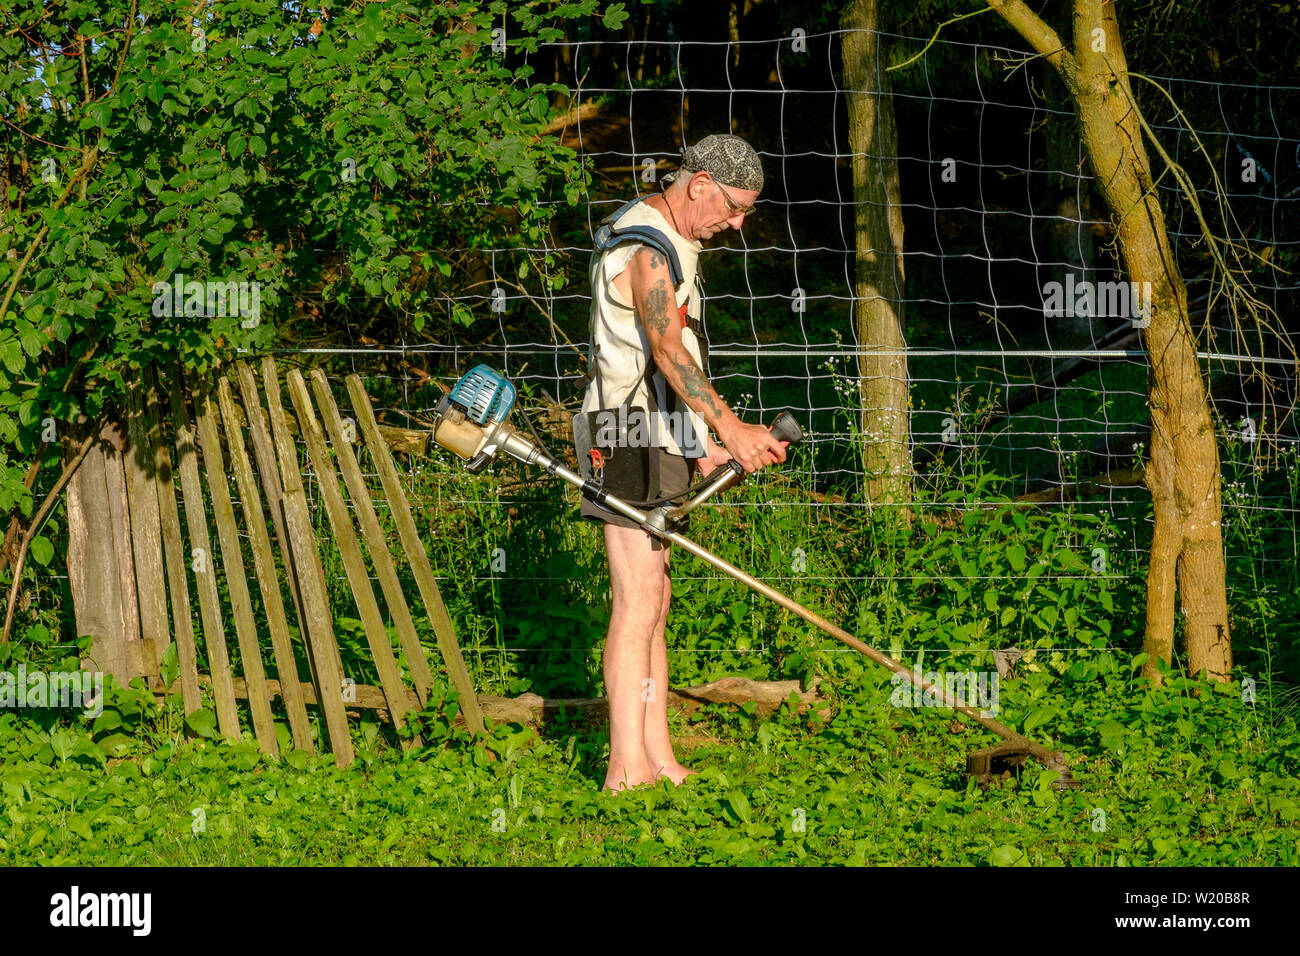 L'homme à l'aide d'un strimmer de couper l'herbe et les mauvaises herbes dans un jardin zala hongrie Banque D'Images